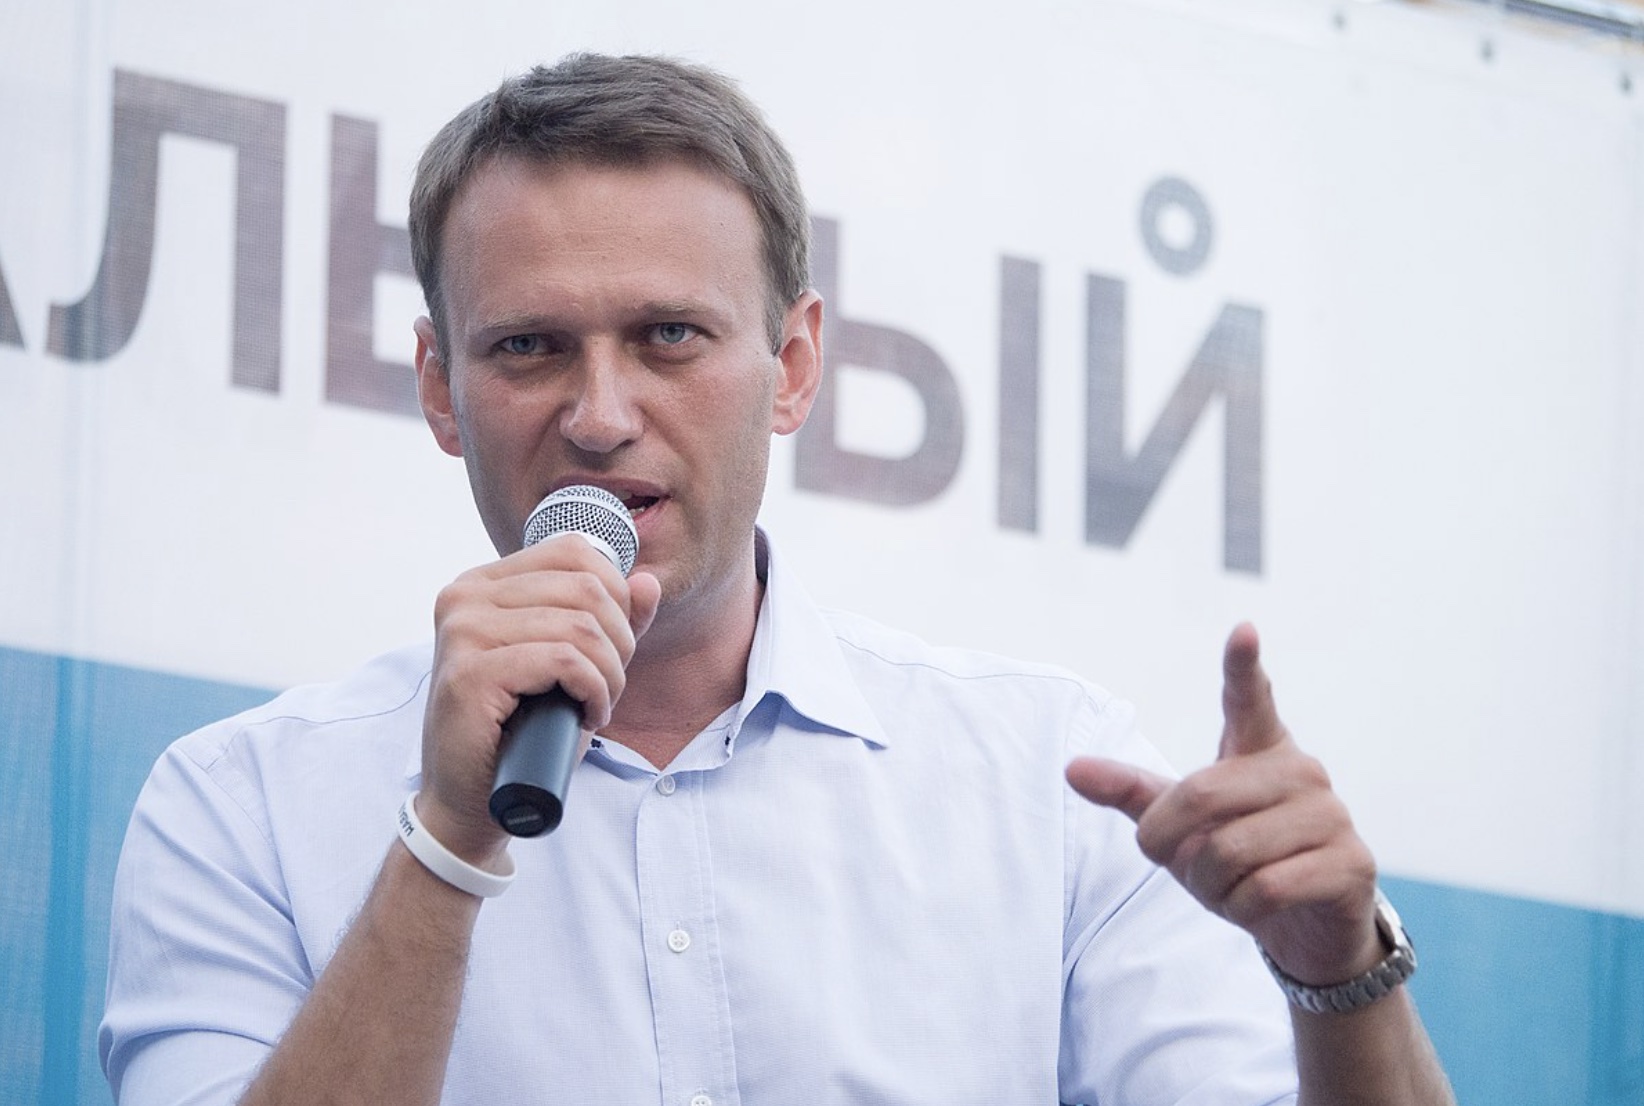 Navalnyj